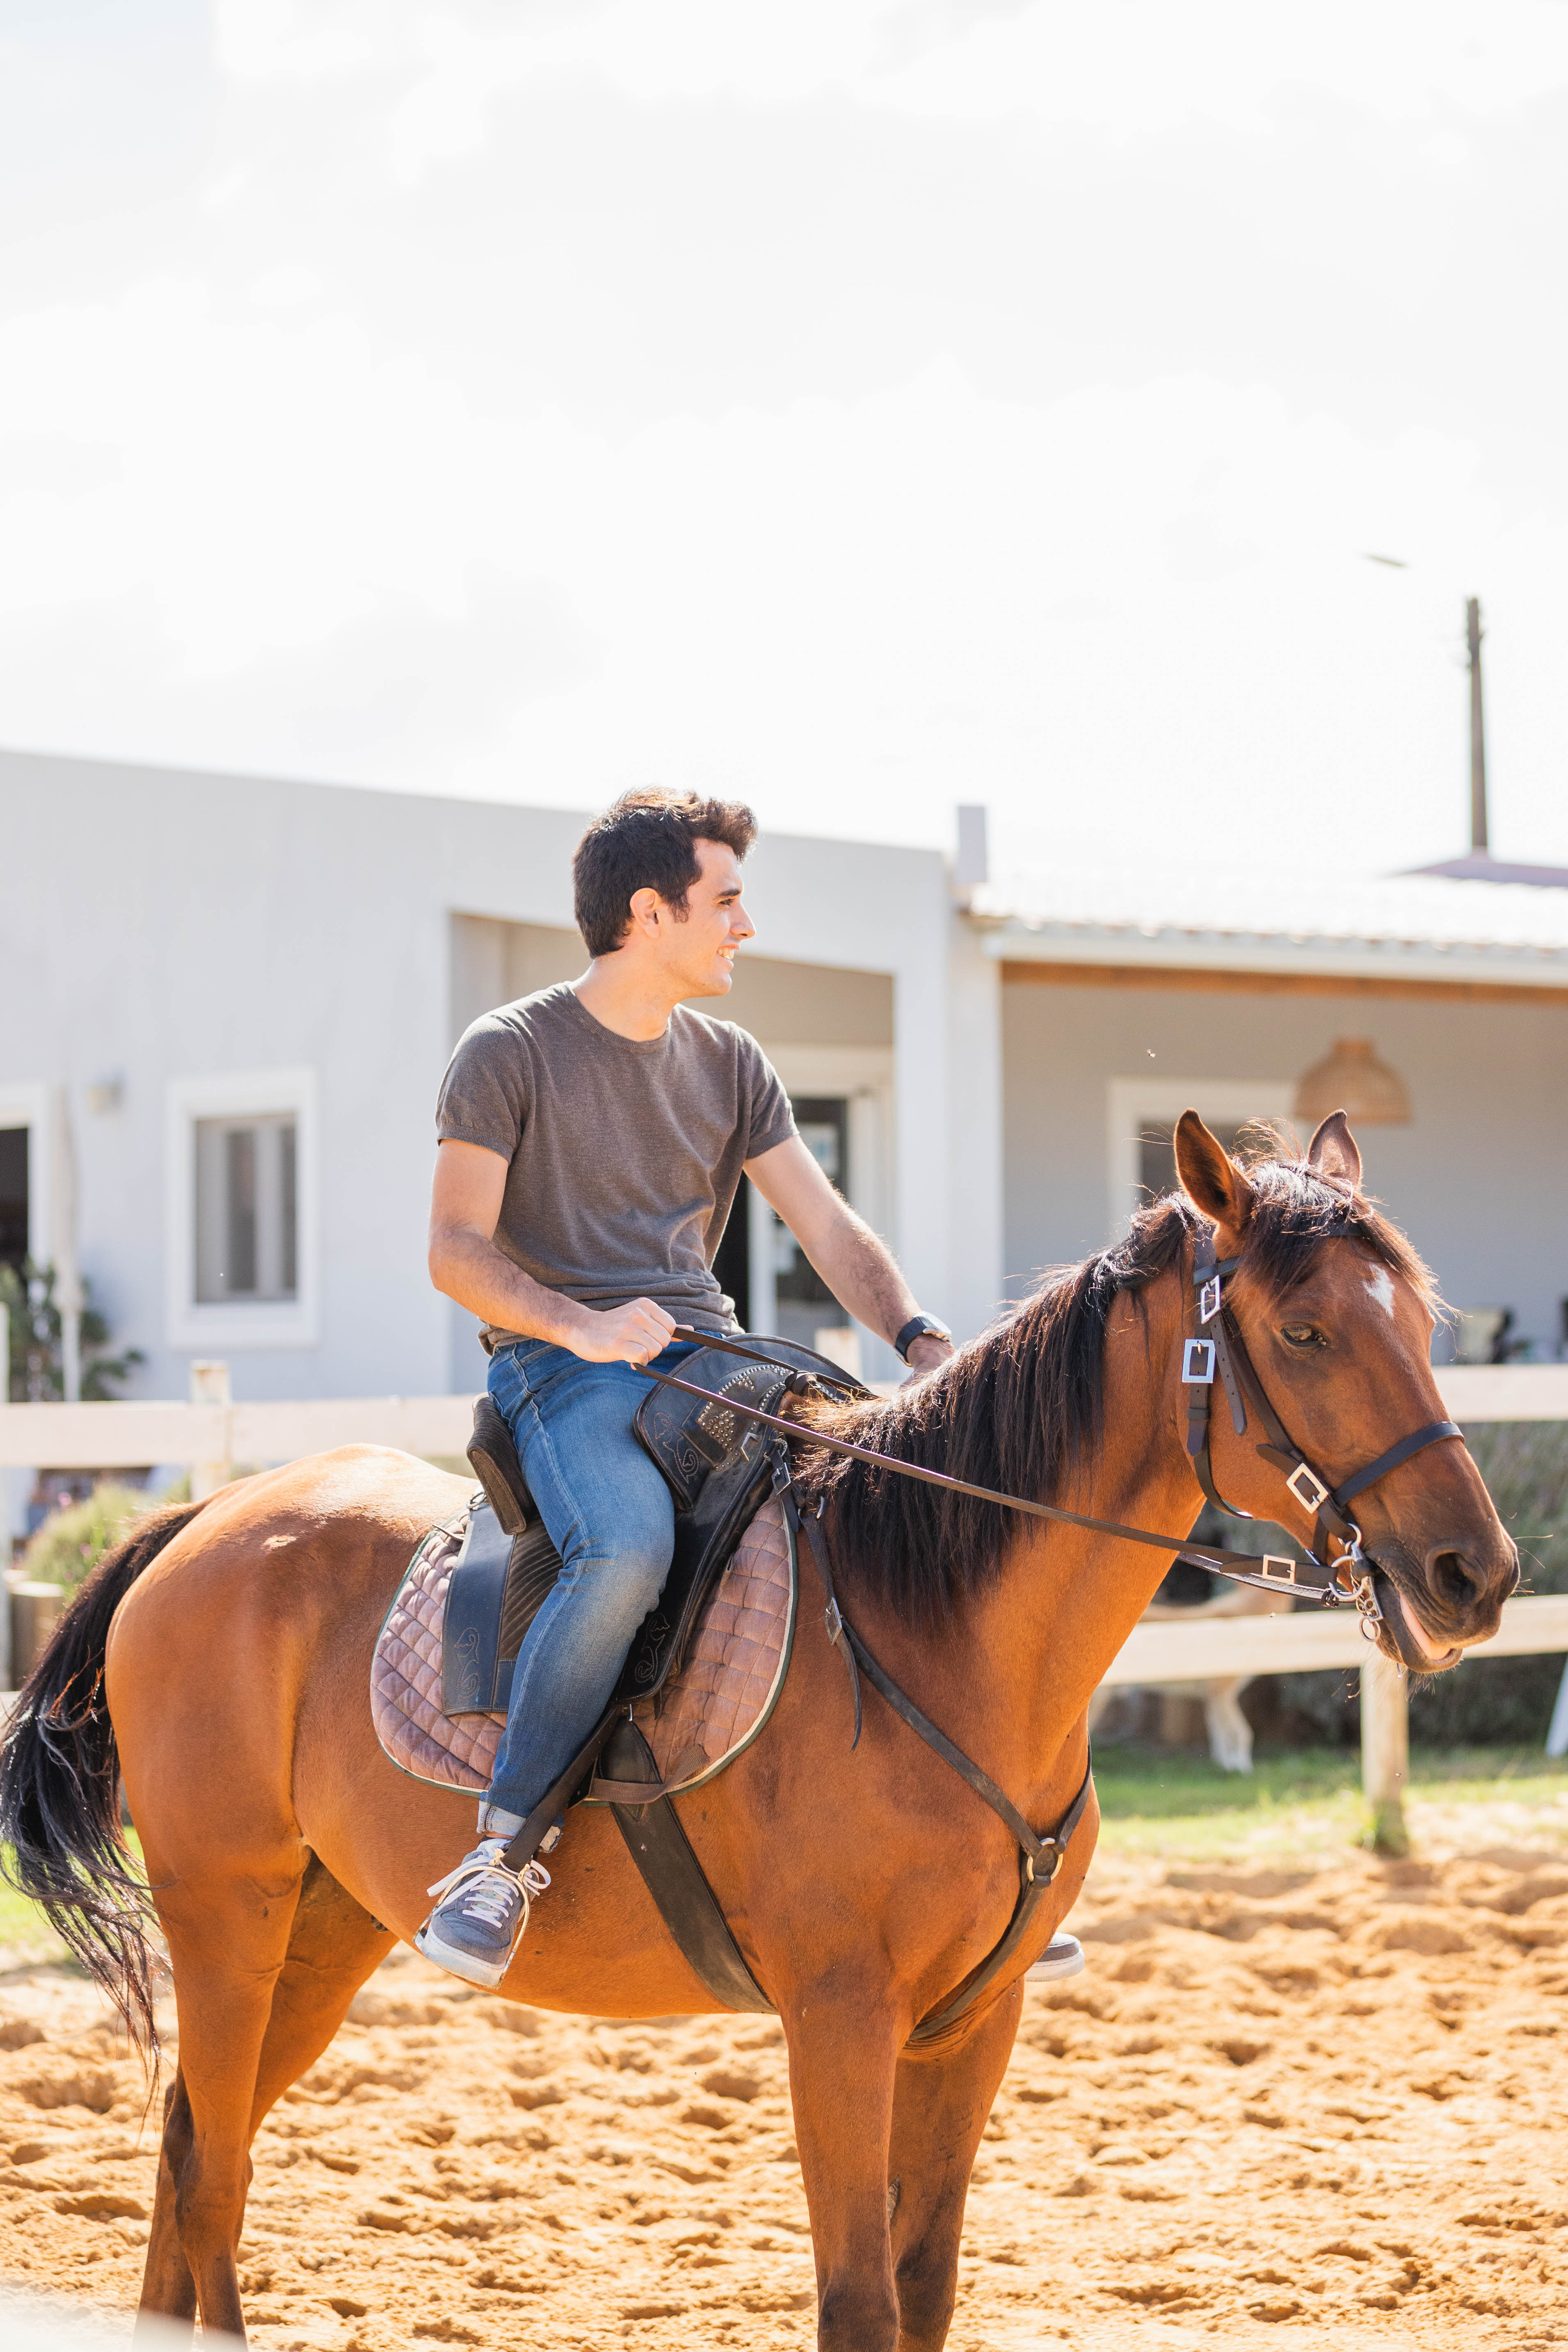 Caixa - Oferta • Jogo Cavalo em Linha + Batismo Equestre – Andar a